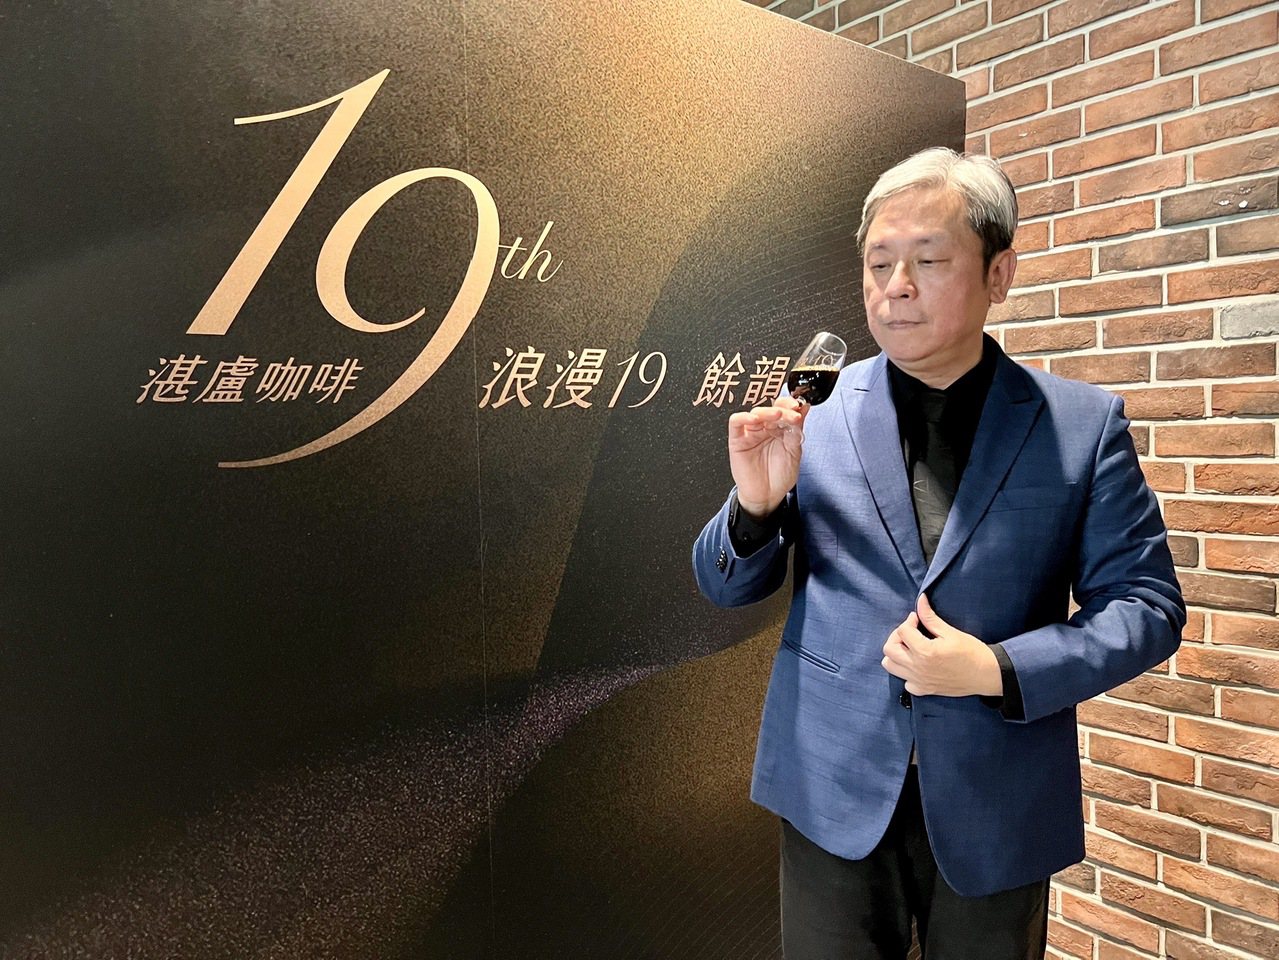  廖國明表示，湛盧希望在下一個19年，成為台灣美好的事物之一。時時傾聽消費者的需求，以品質與創新來回應消費者的需要。蘇璽文／攝影